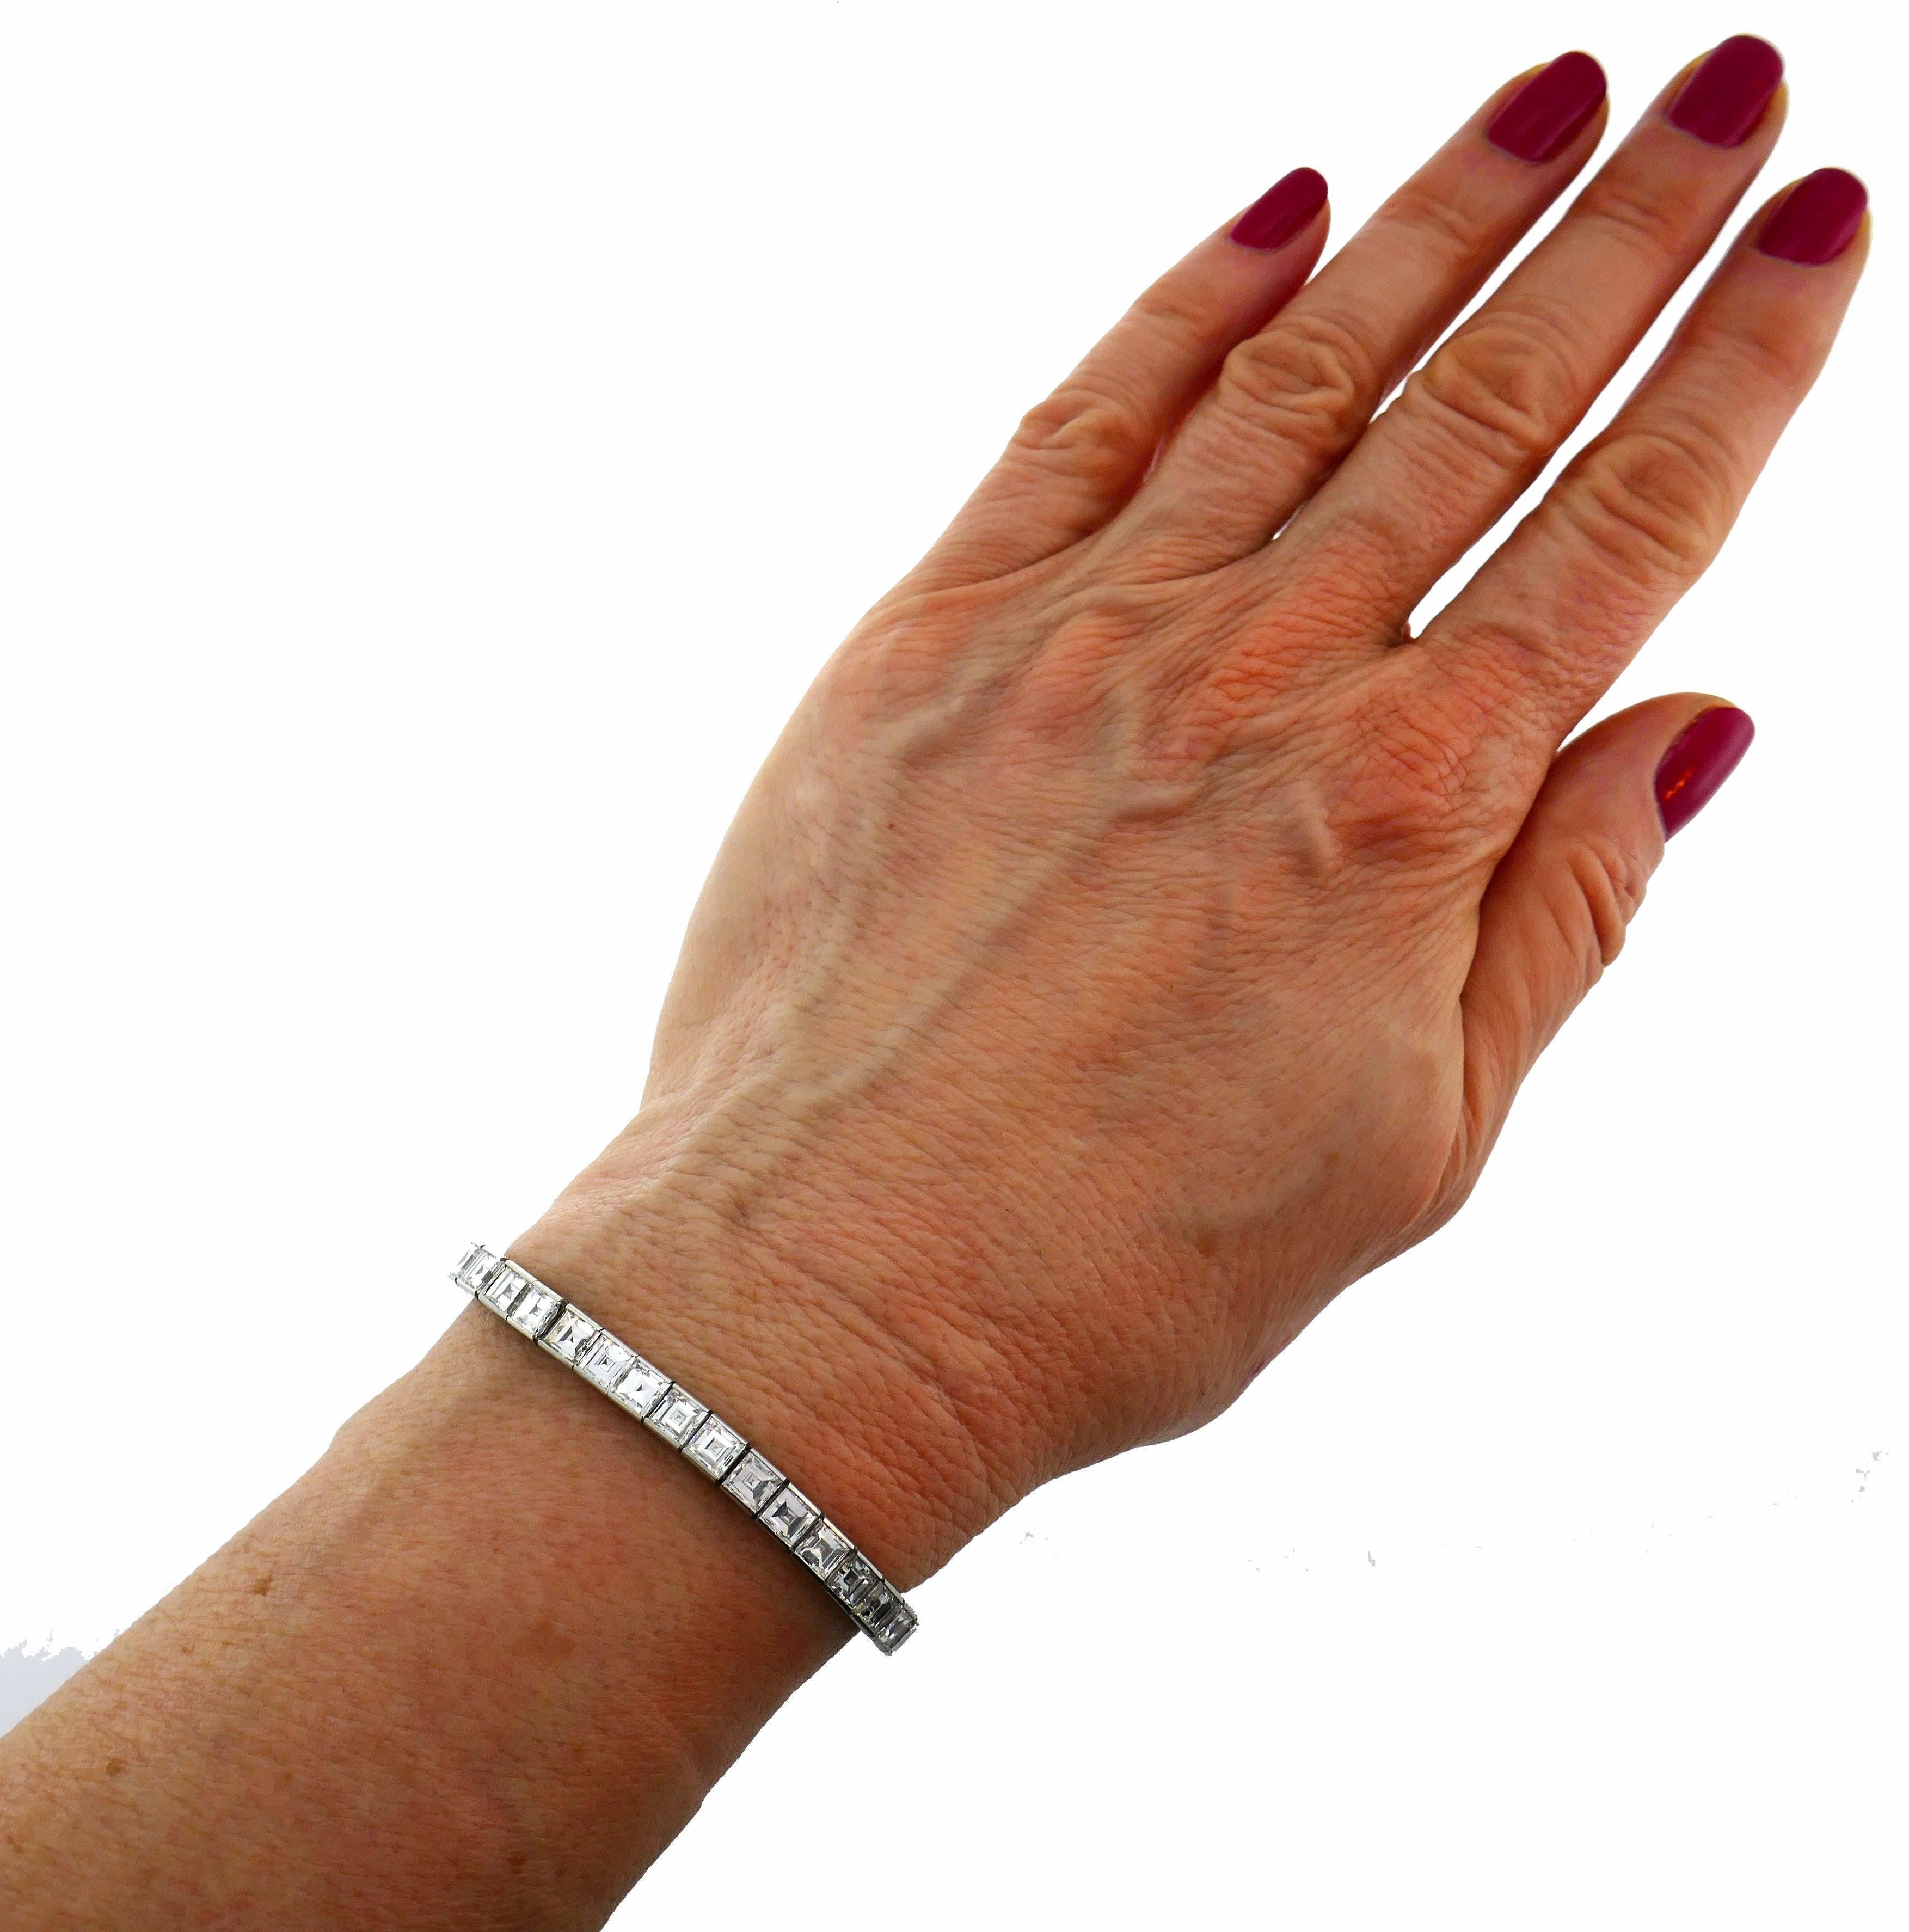 Superbe bracelet tennis en diamants et platine créé par Boucheron dans les années 1950. Le bracelet est composé de 44 diamants carrés parfaitement sélectionnés, de couleur H-I, de pureté VS et d'un poids total d'environ 15,40 carats. 
Le bracelet